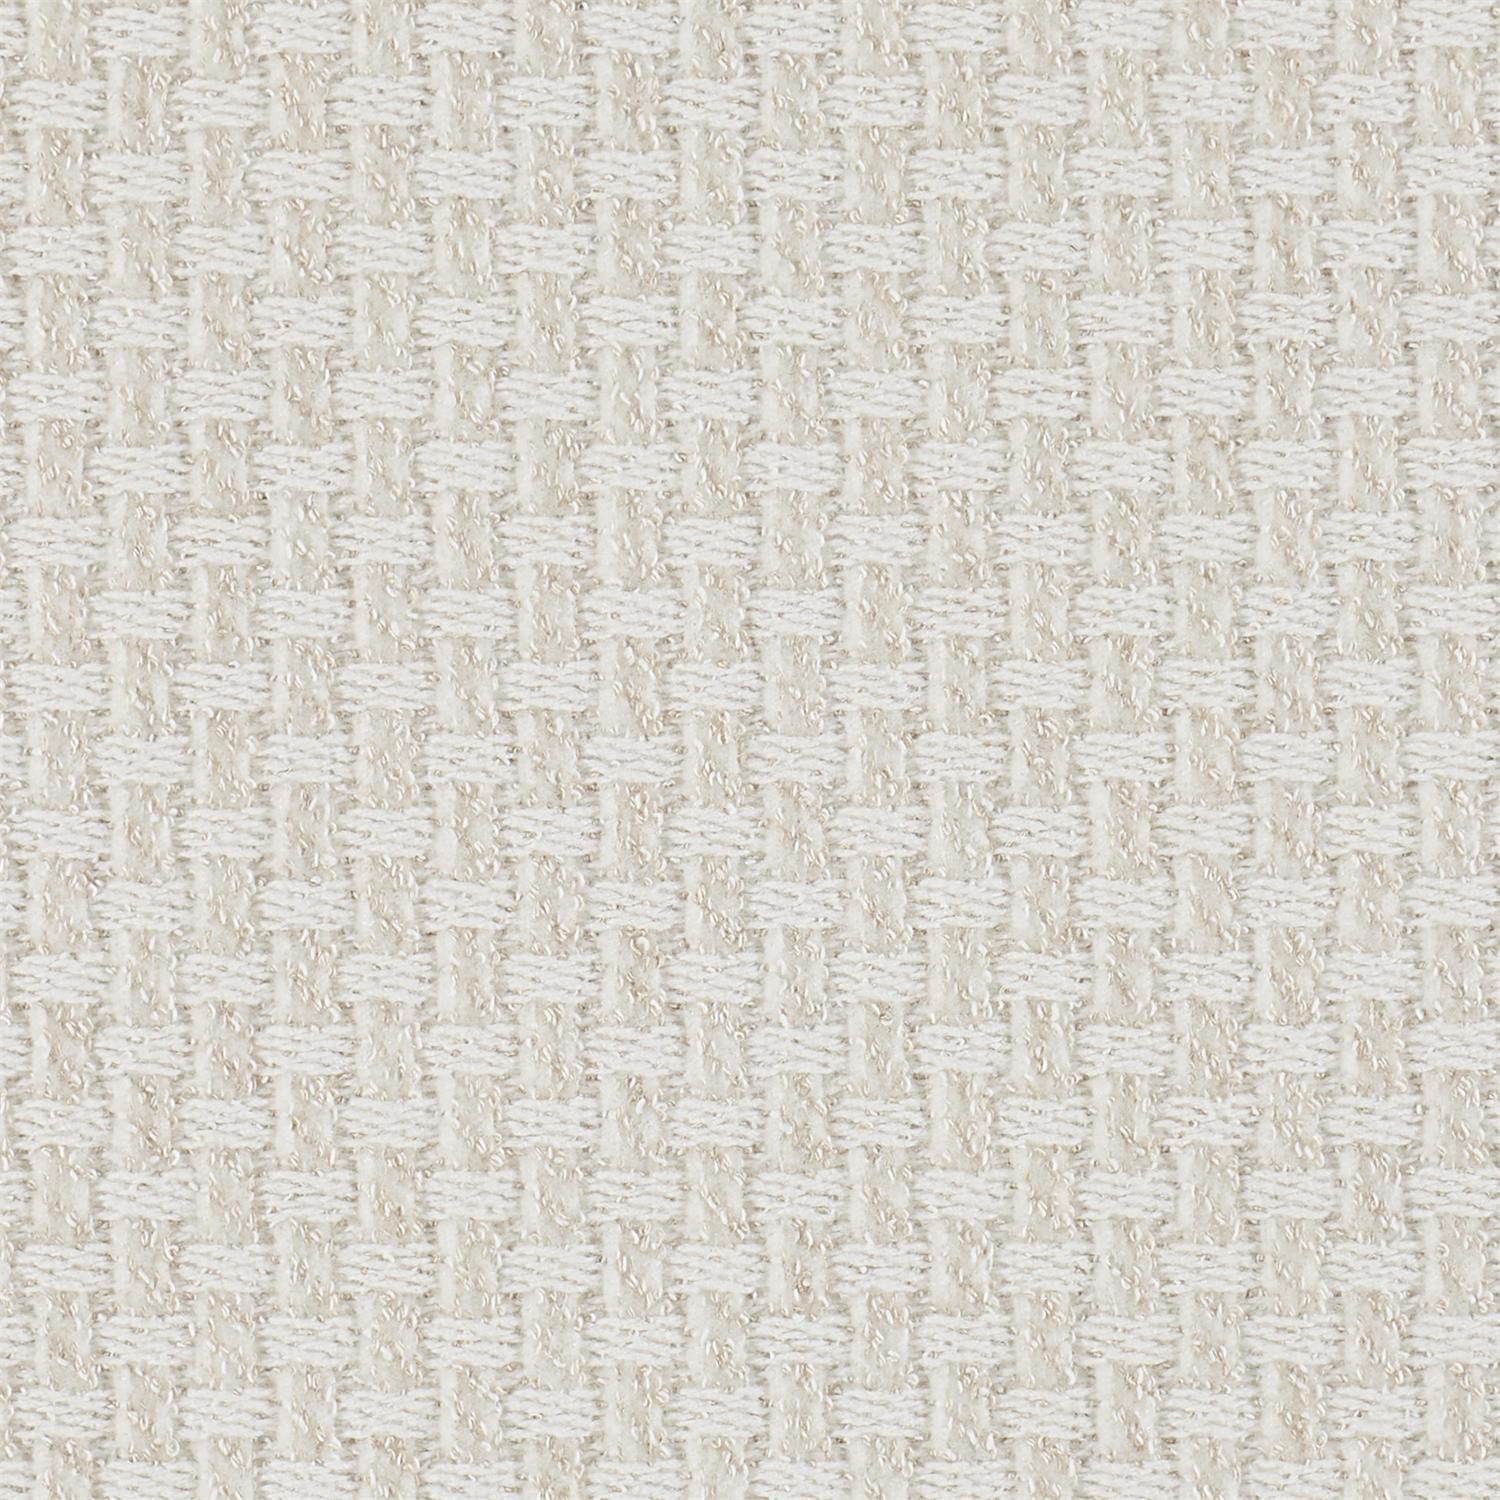 6103-002 Fabric